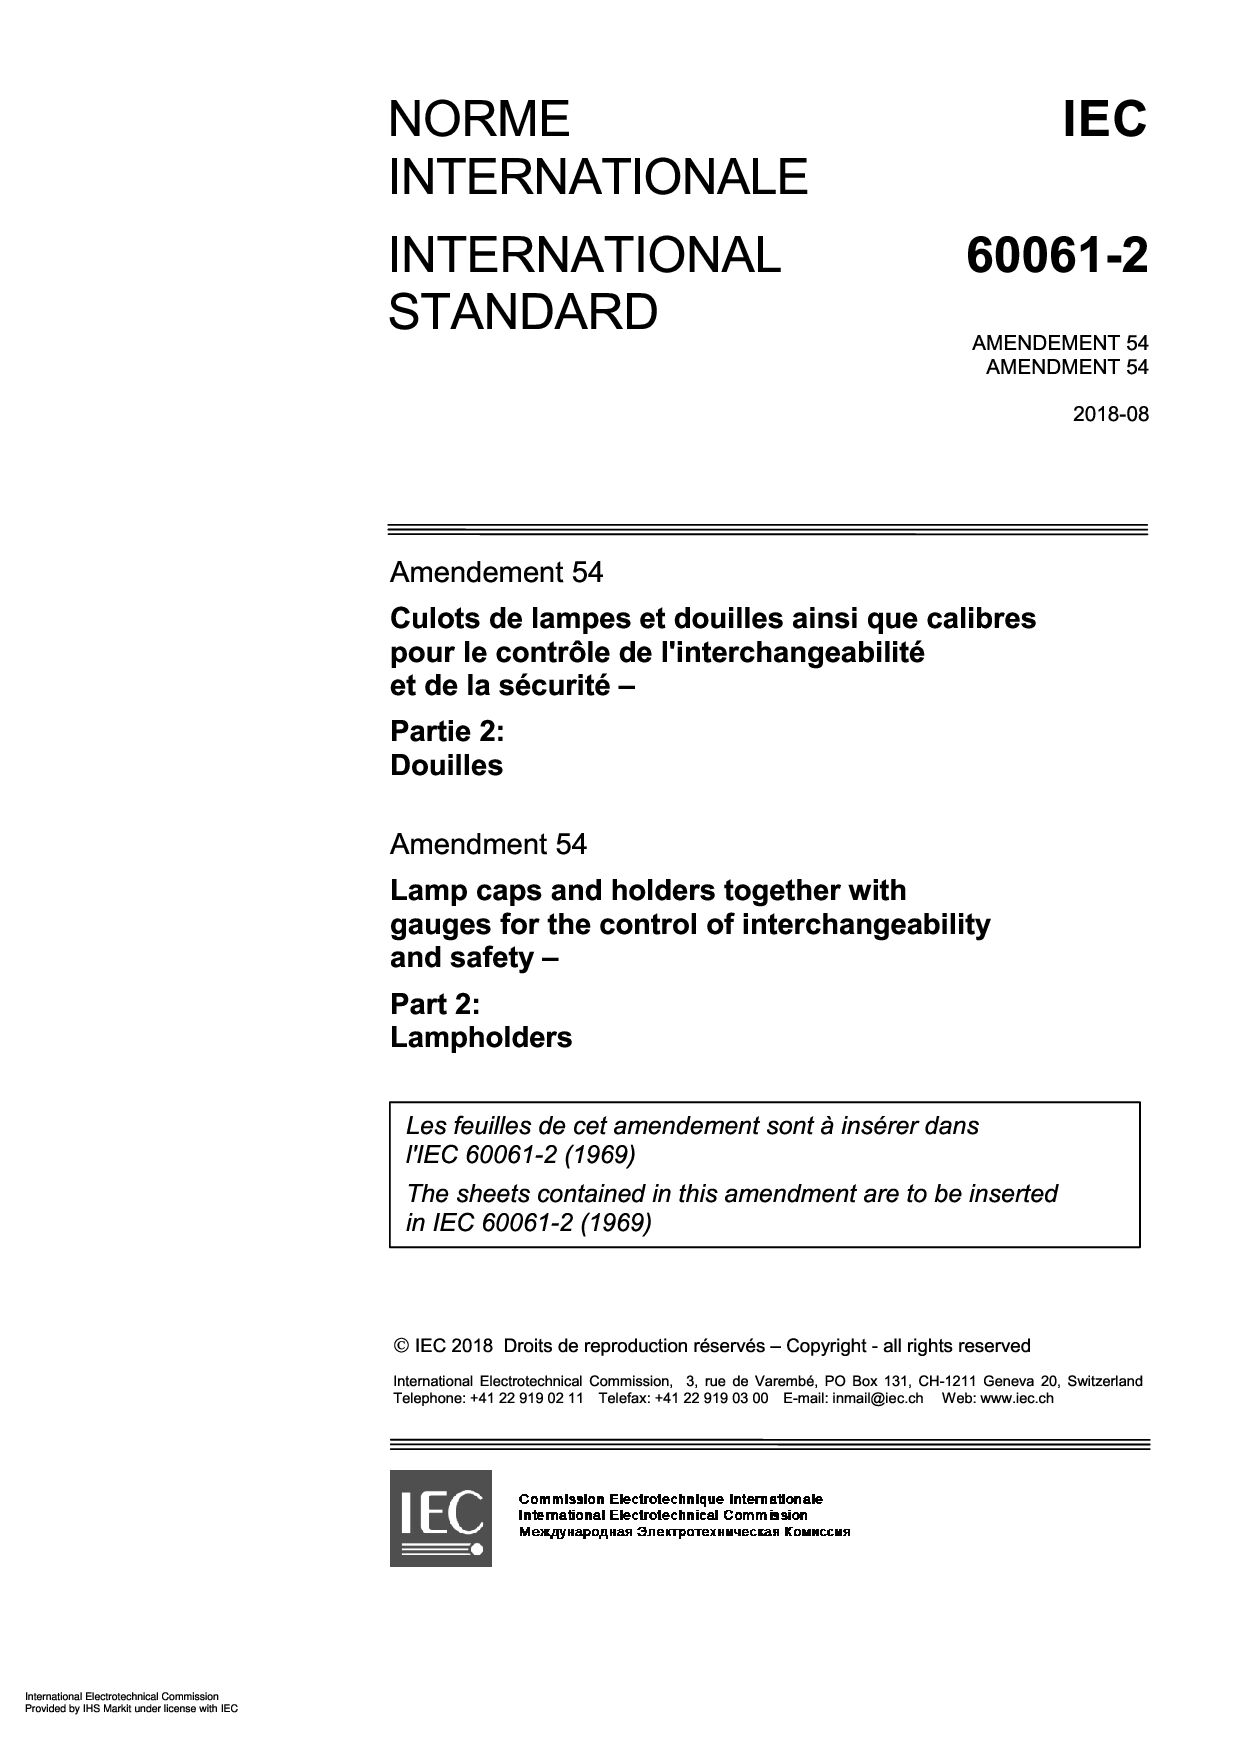 IEC 60061-2:1969/AMD54:2018